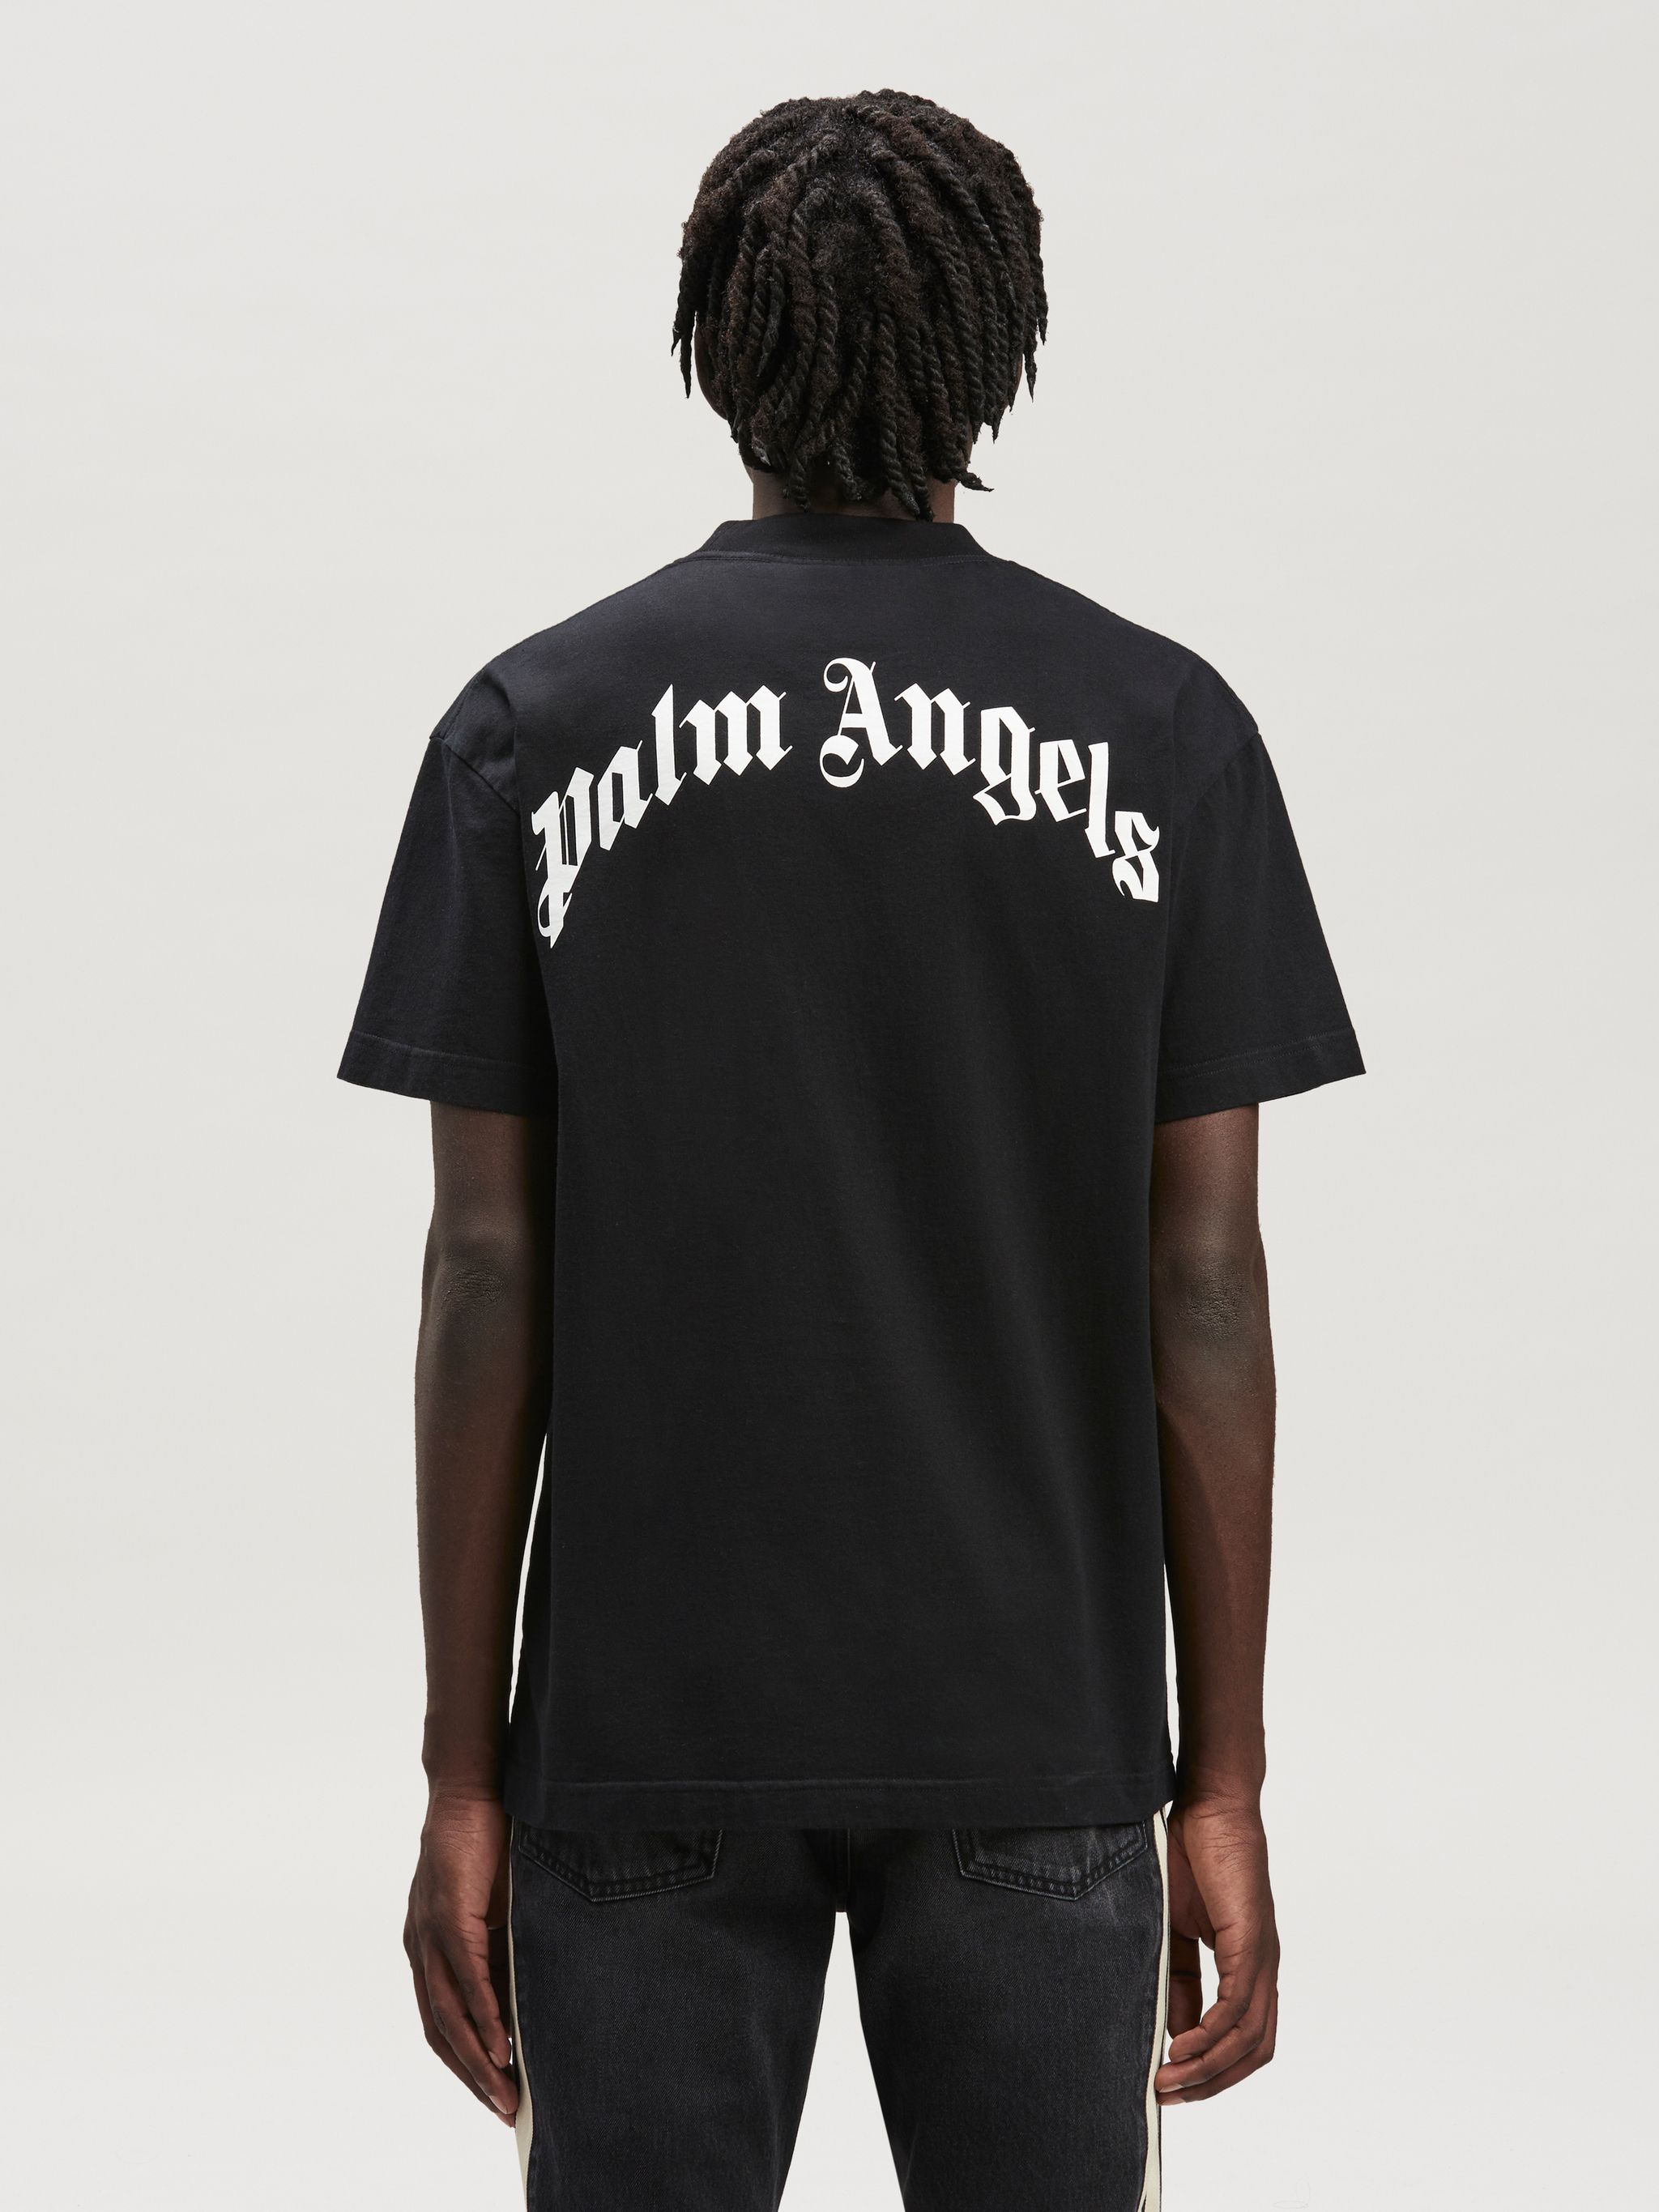 Vintage Black Men's T-shirt Palm Angels Size M 